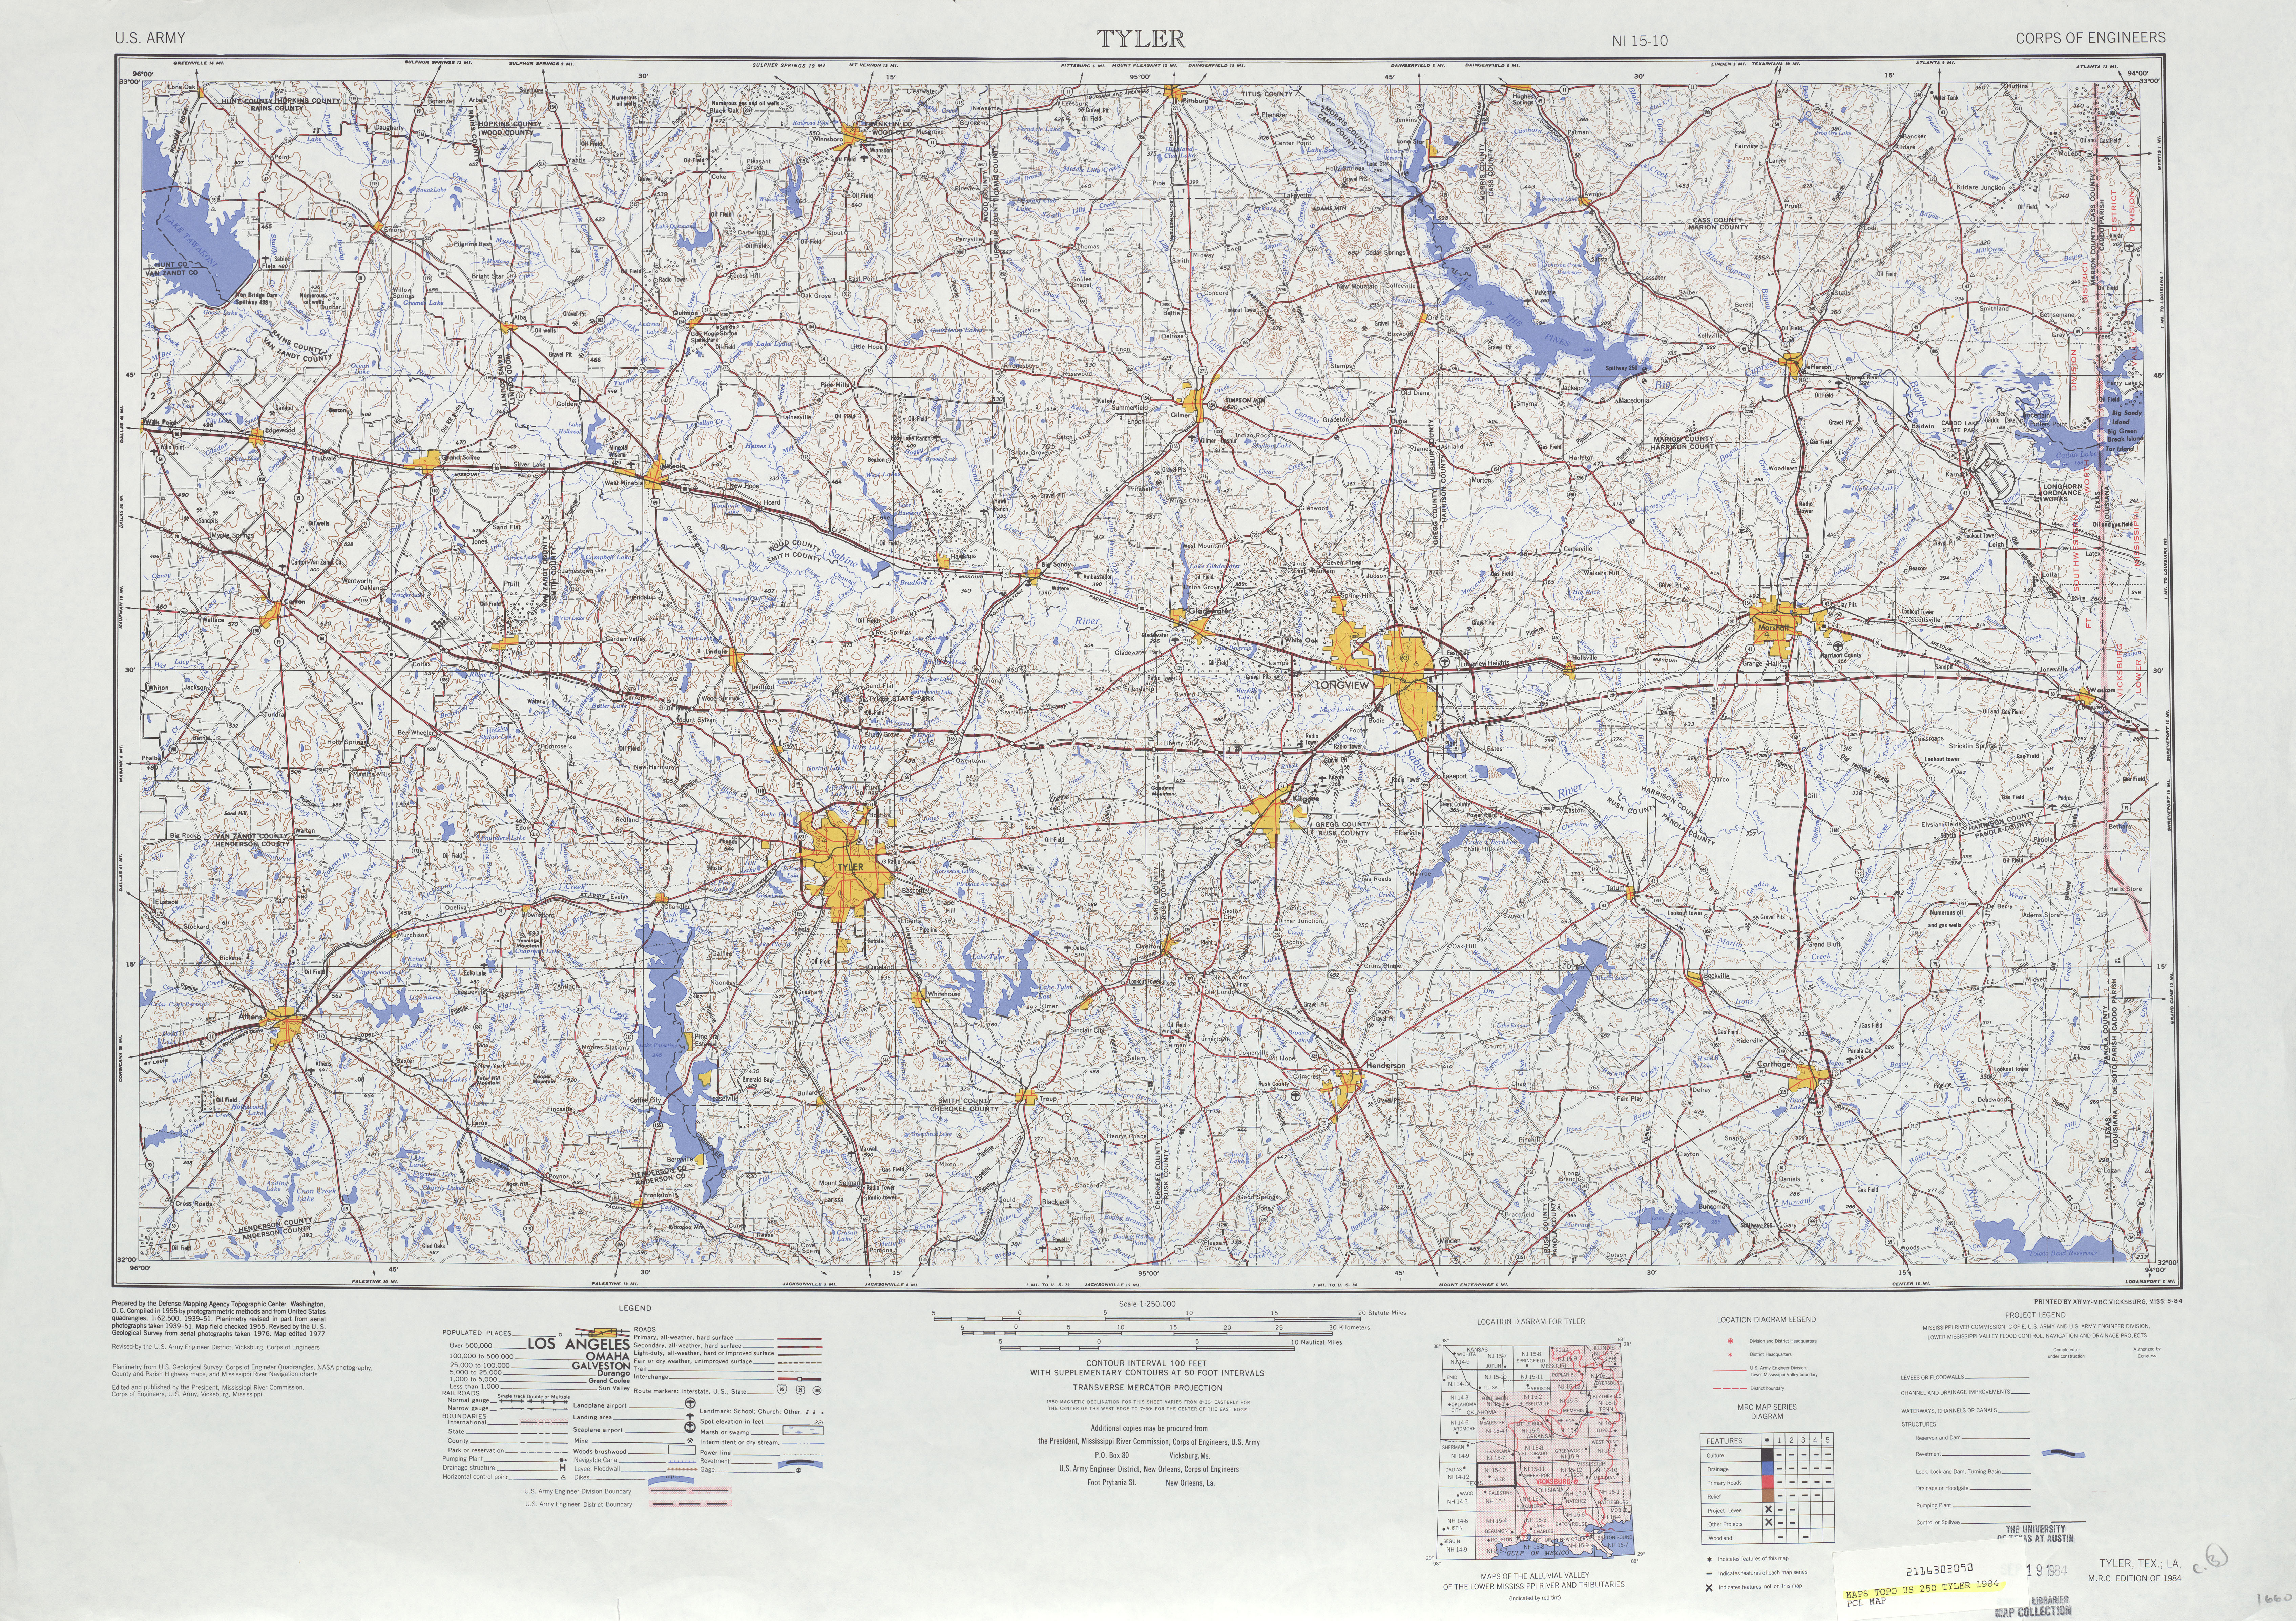 Hoja Tyler del Mapa Topográfico de los Estados Unidos 1984